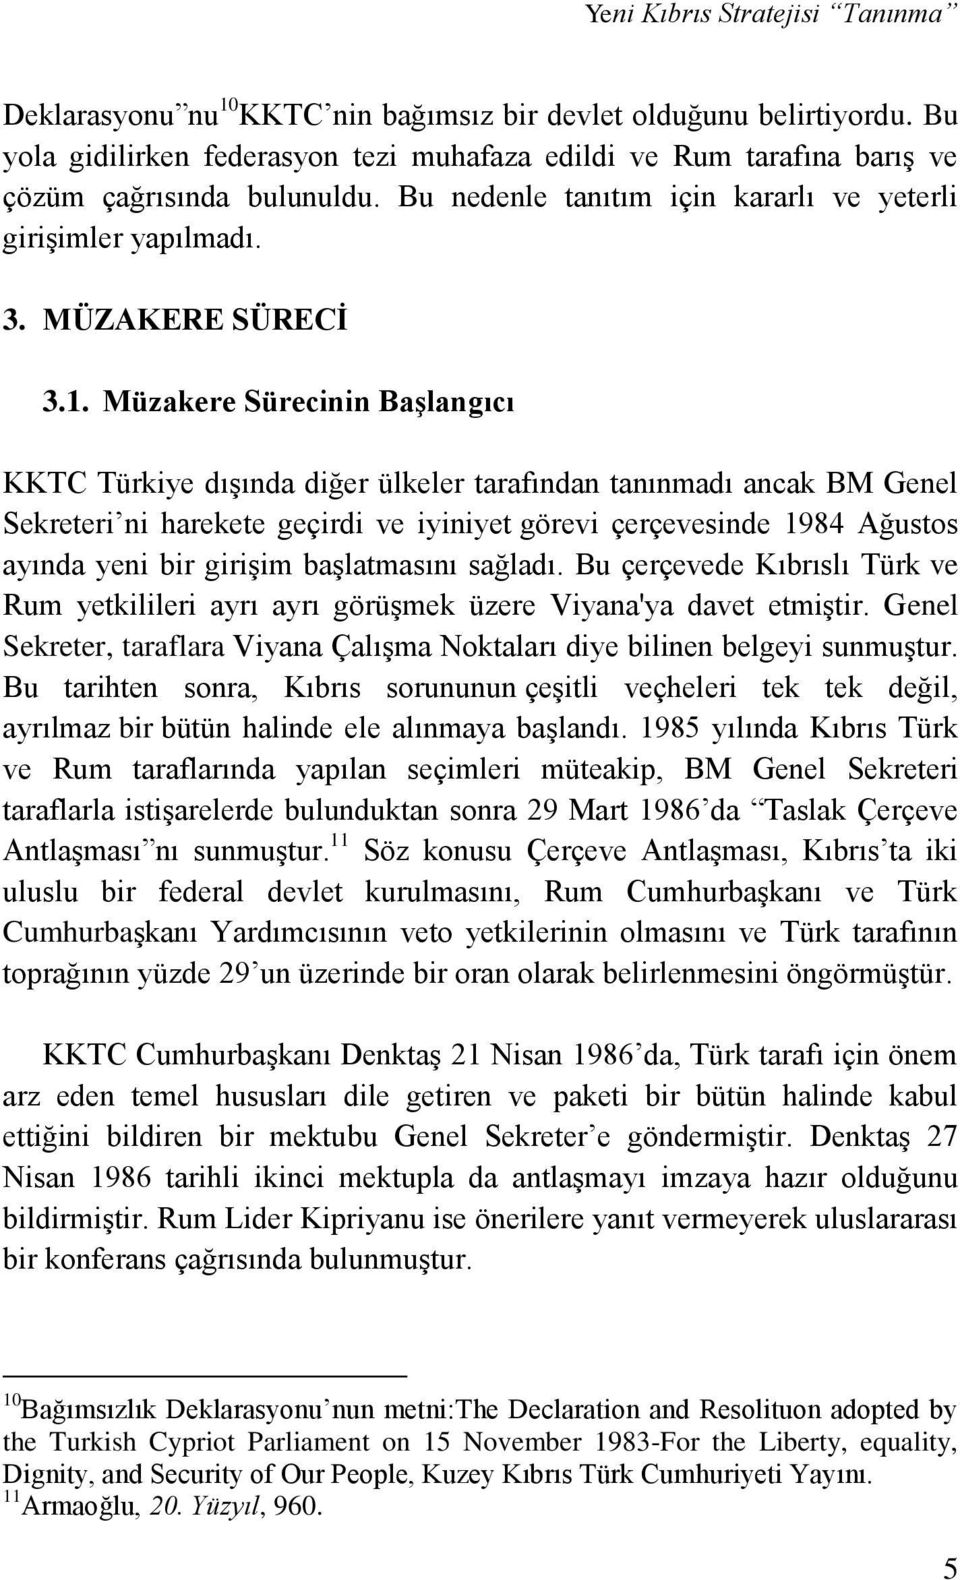 Müzakere Sürecinin Başlangıcı KKTC Türkiye dışında diğer ülkeler tarafından tanınmadı ancak BM Genel Sekreteri ni harekete geçirdi ve iyiniyet görevi çerçevesinde 1984 Ağustos ayında yeni bir girişim